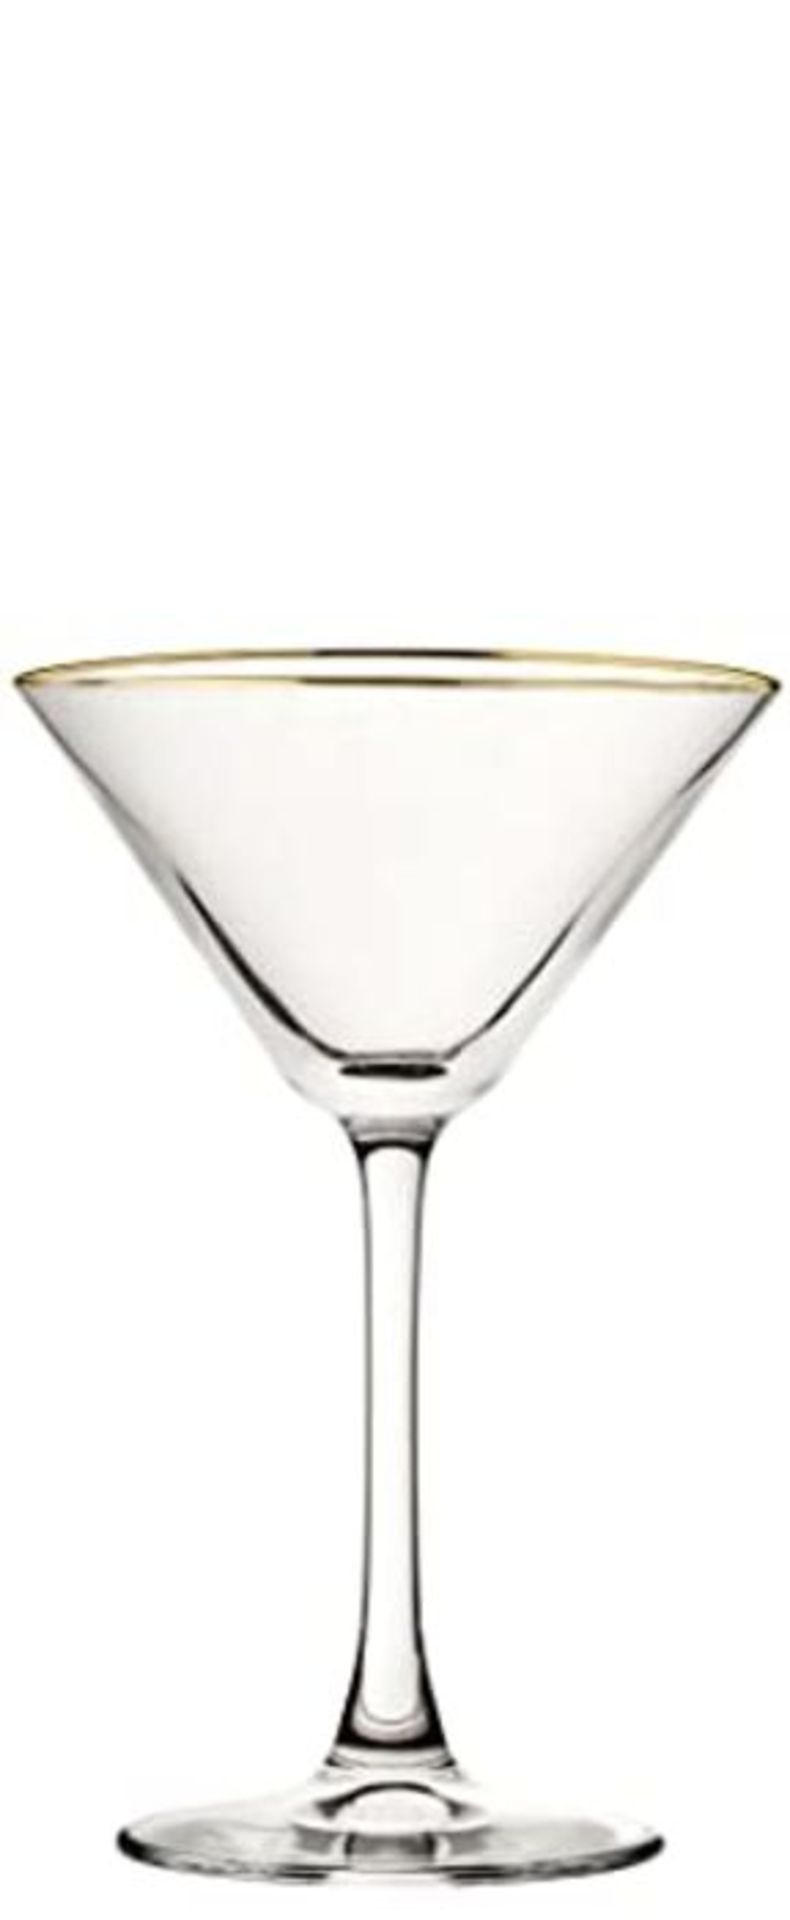 Utopia City Martini Glasses Gold Rim 7.25oz / 200ml - Set of 6 - Vintage Inspired Mart